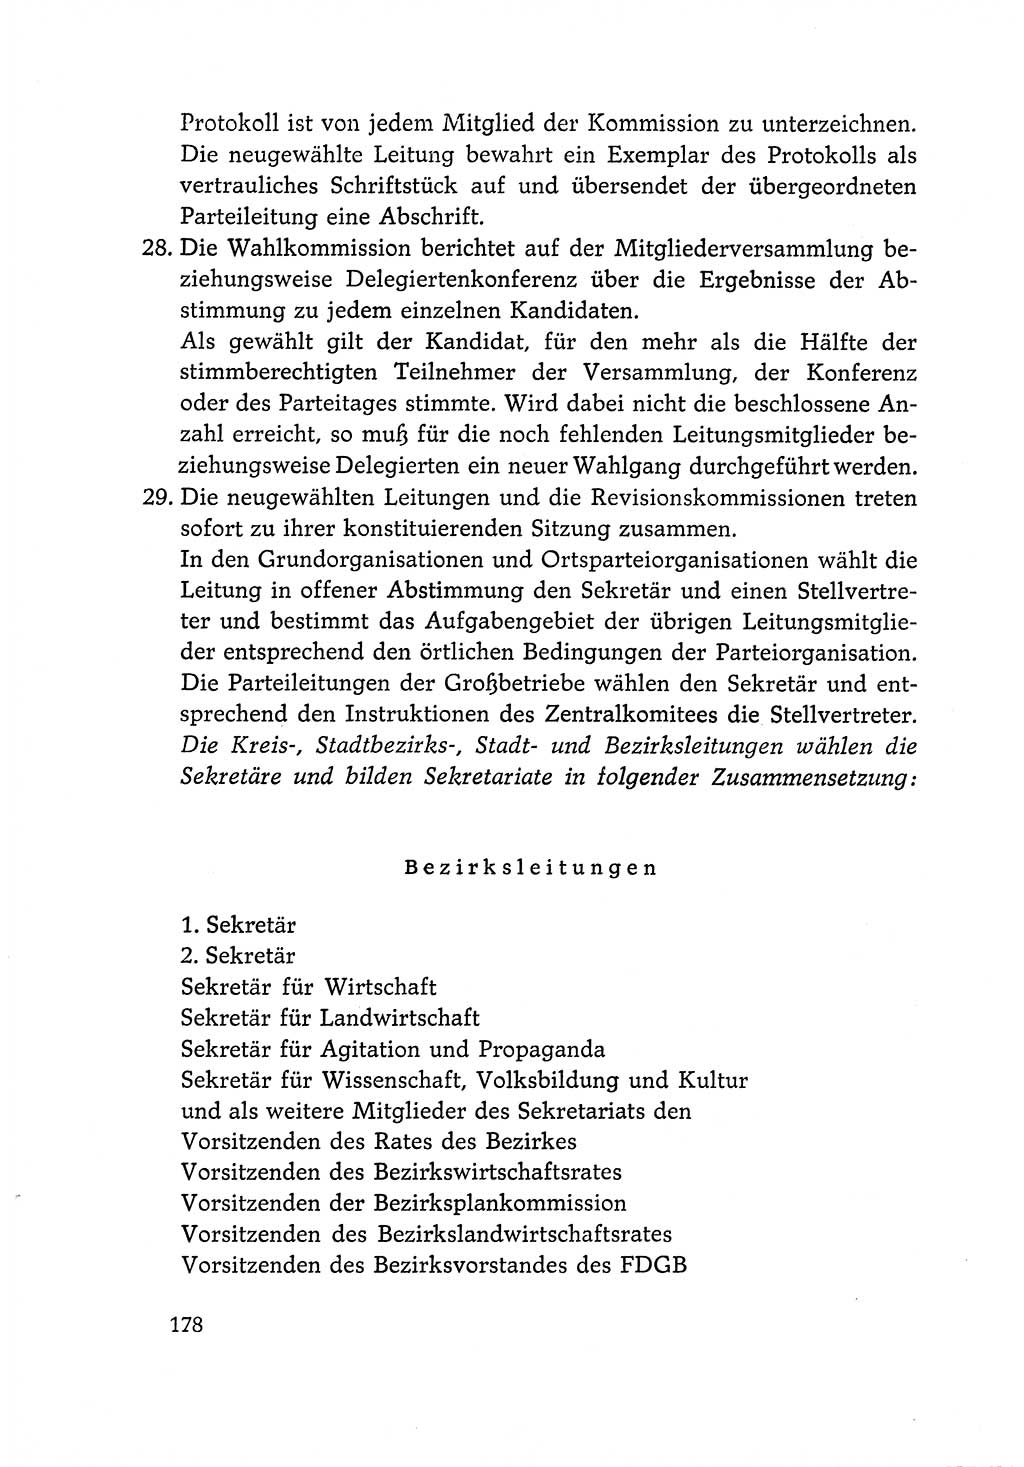 Dokumente der Sozialistischen Einheitspartei Deutschlands (SED) [Deutsche Demokratische Republik (DDR)] 1966-1967, Seite 178 (Dok. SED DDR 1966-1967, S. 178)